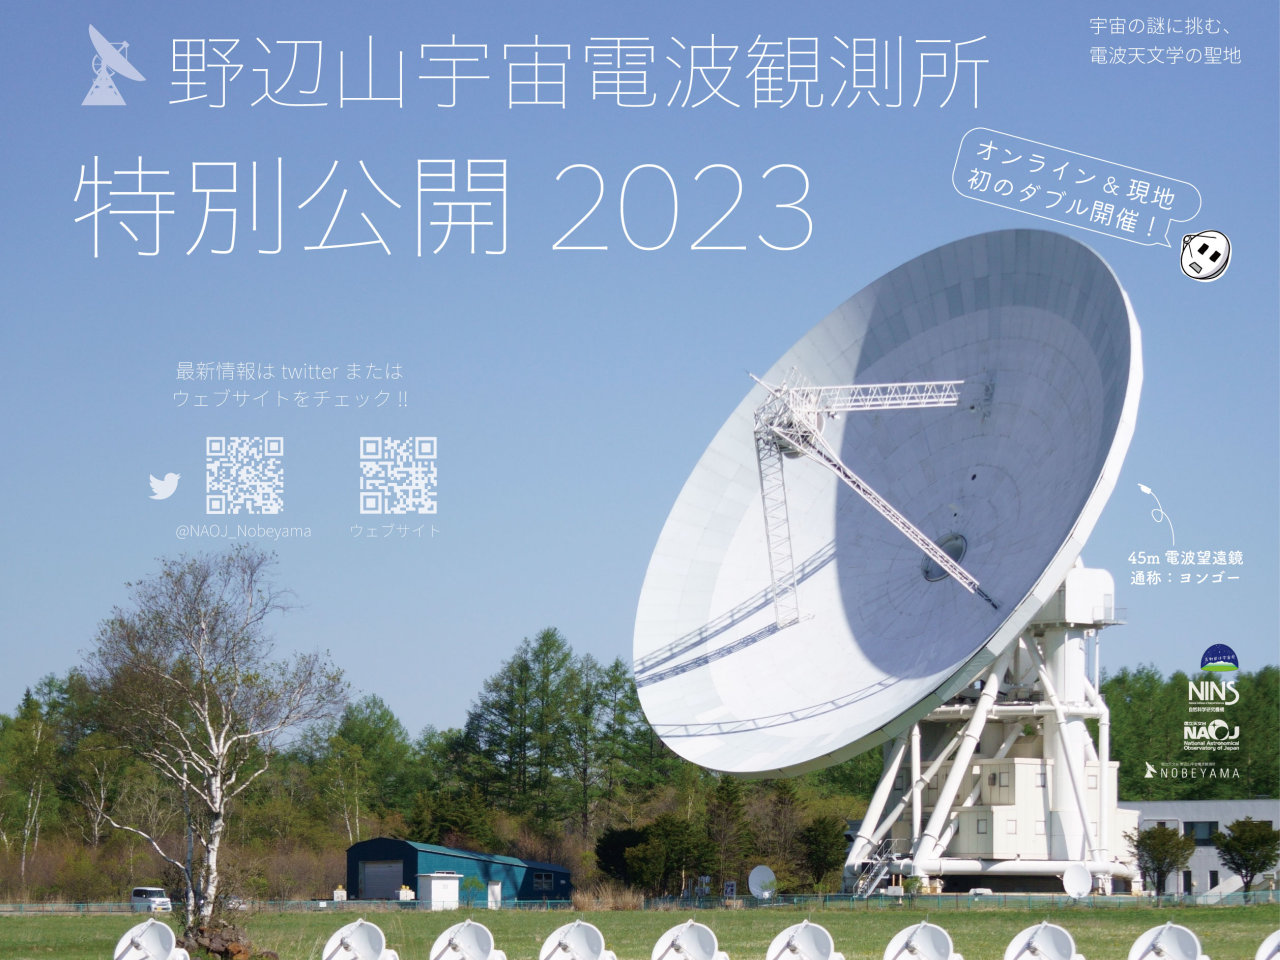 国立天文台、野辺山と石垣島の観測施設を夏休みに特別公開--電波望遠鏡に触ろう